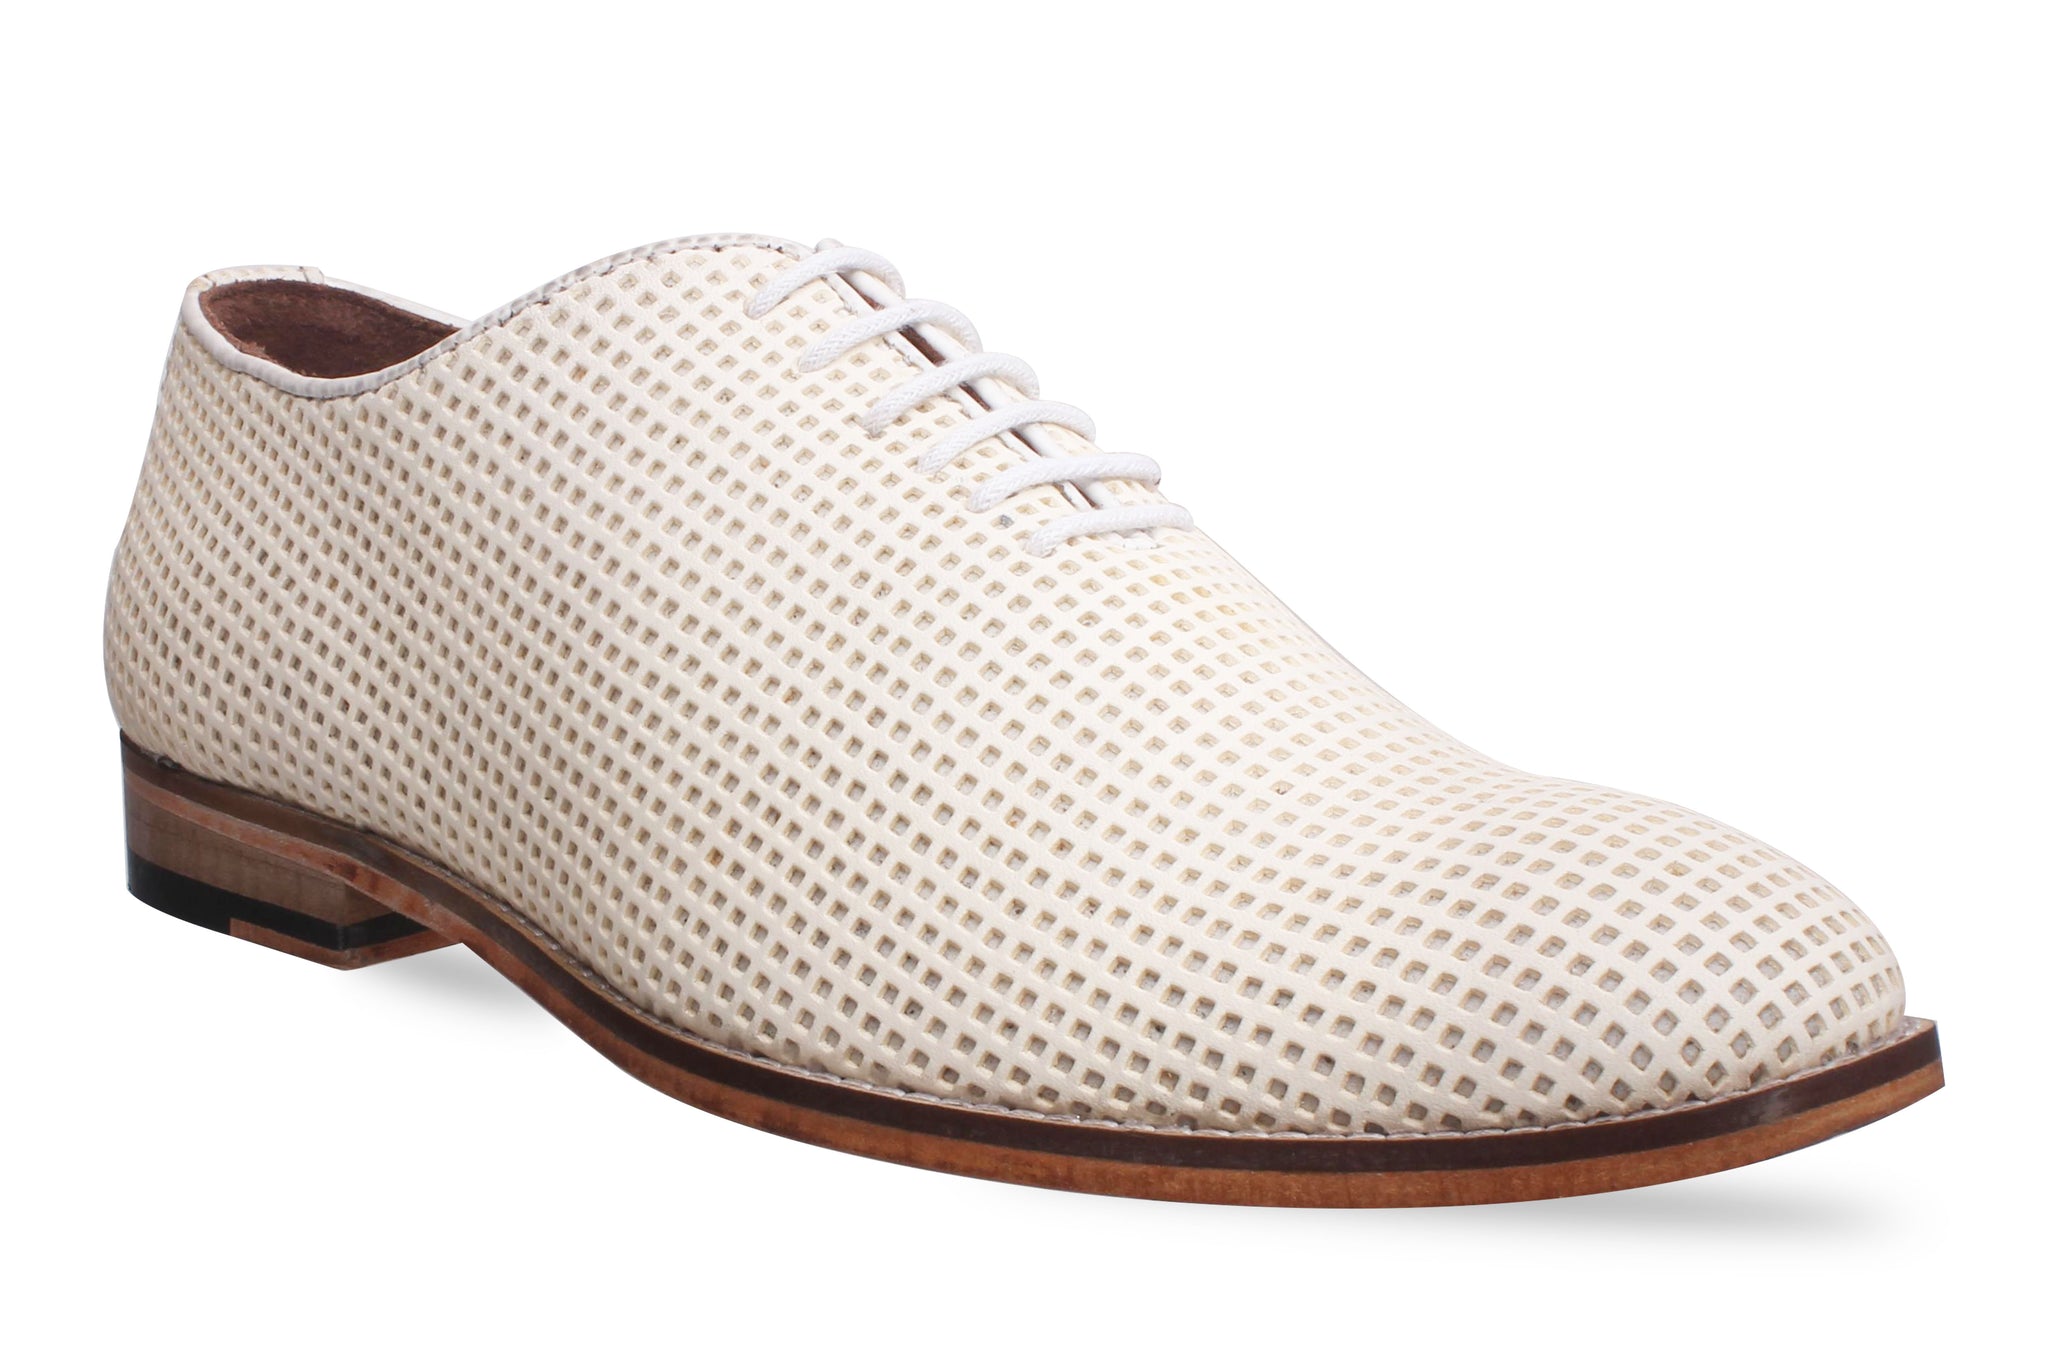 Men's formal White Shoes Net Design 